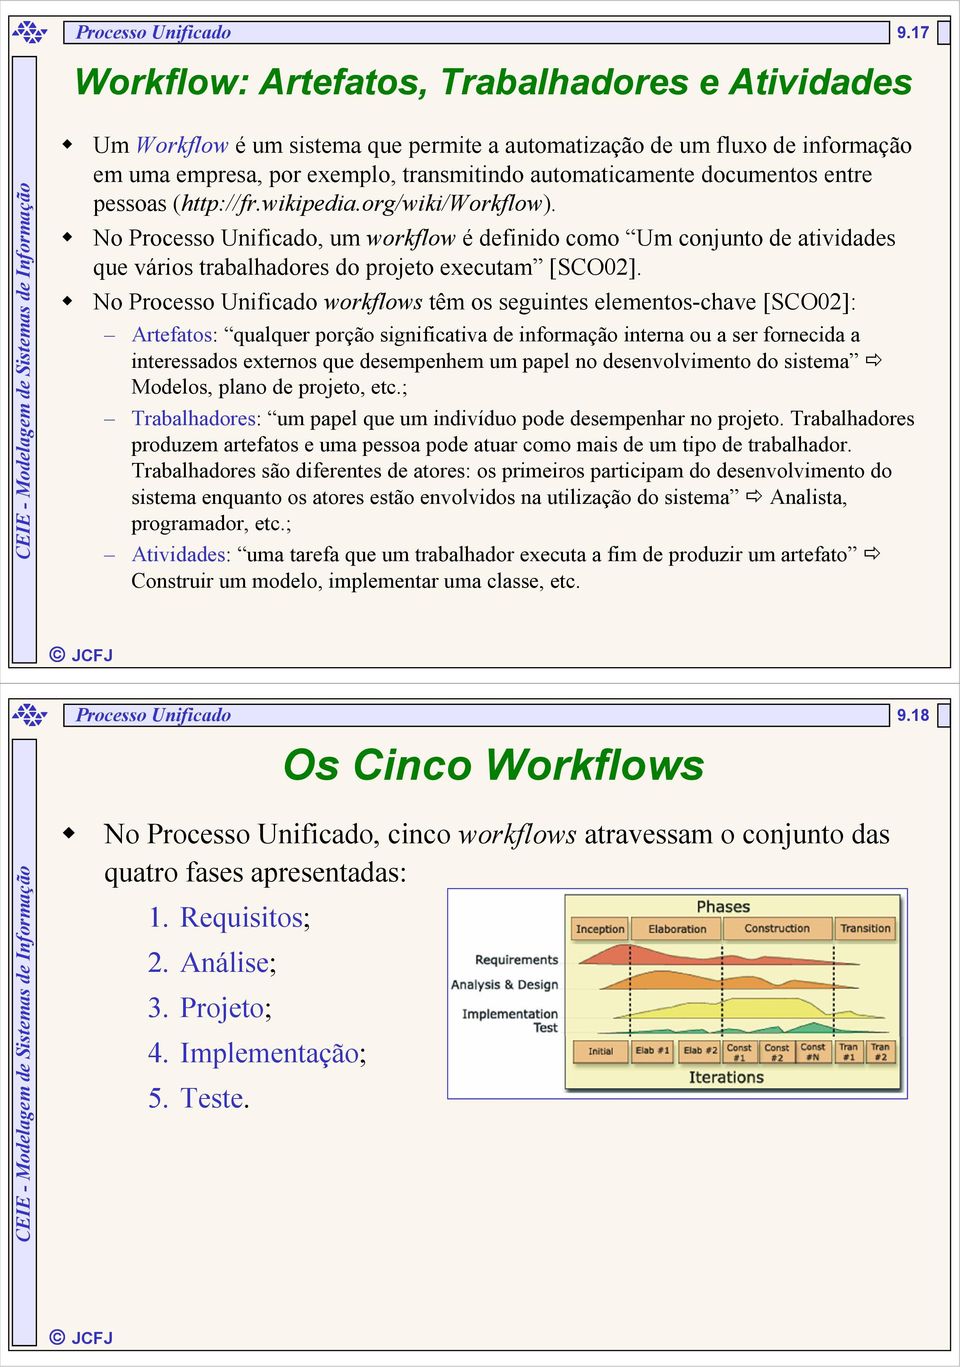 entre pessoas (http://fr.wikipedia.org/wiki/workflow). No Processo Unificado, um workflow é definido como Um conjunto de atividades que vários trabalhadores do projeto executam [SCO02].